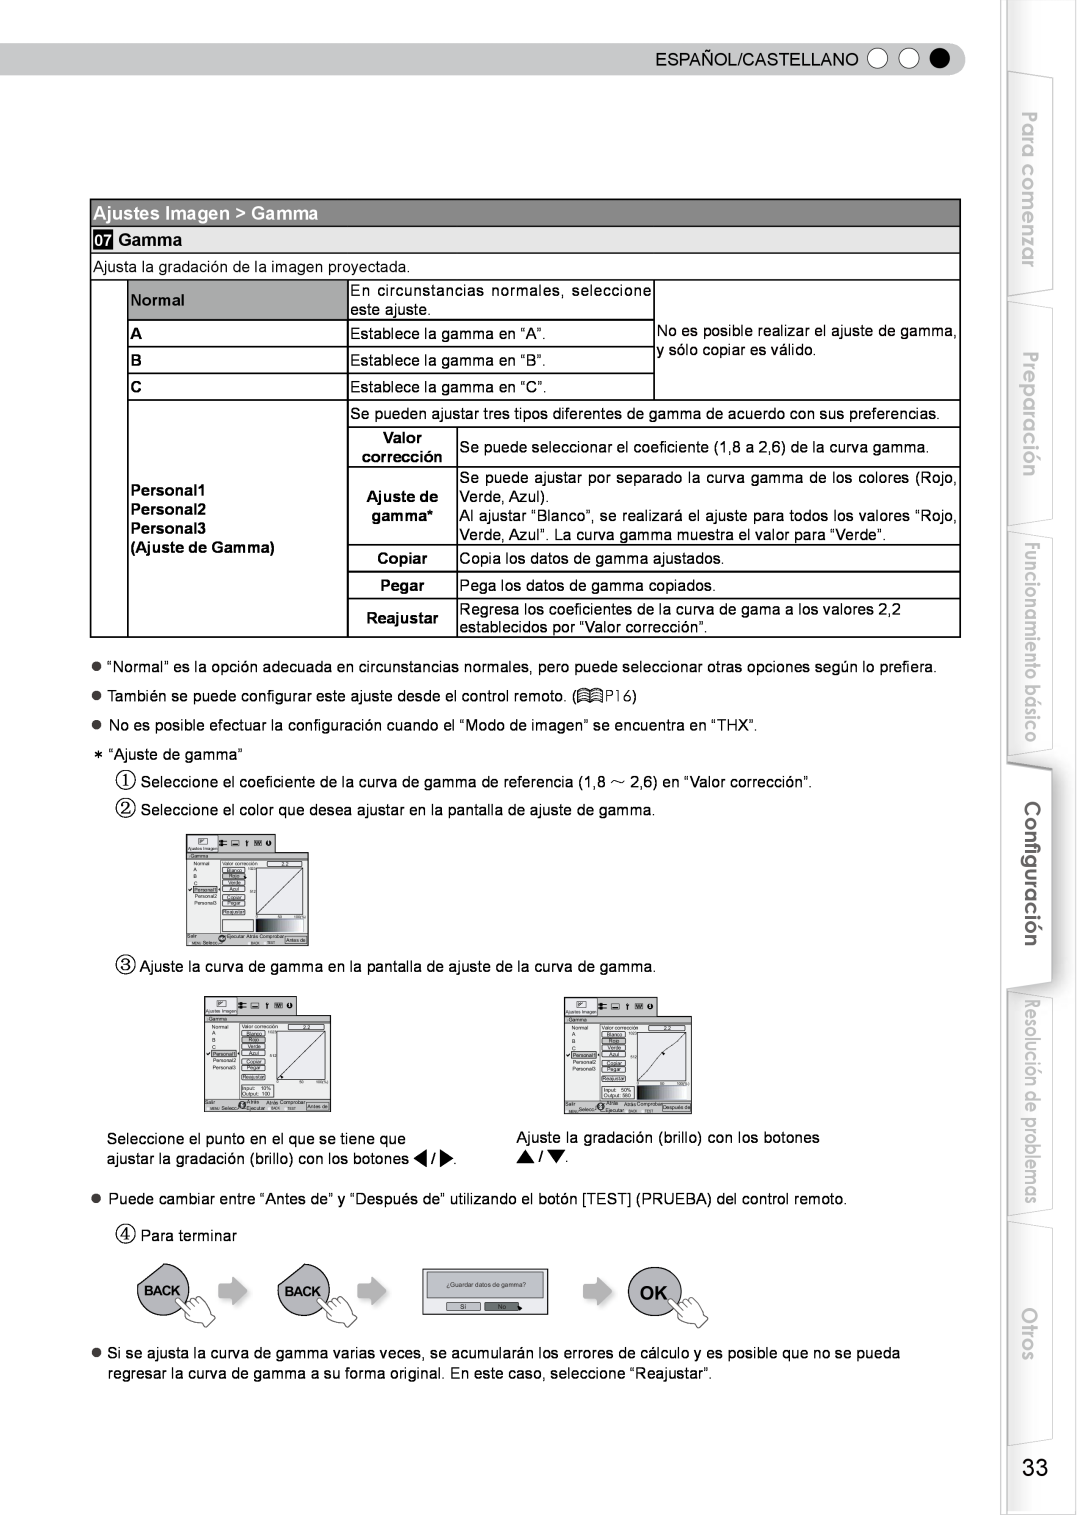 JVC PB006596599-0 manual Para comenzar, Otros, Ajustes Imagen Gamma, Español/Castellano, y sólo copiar es válido 